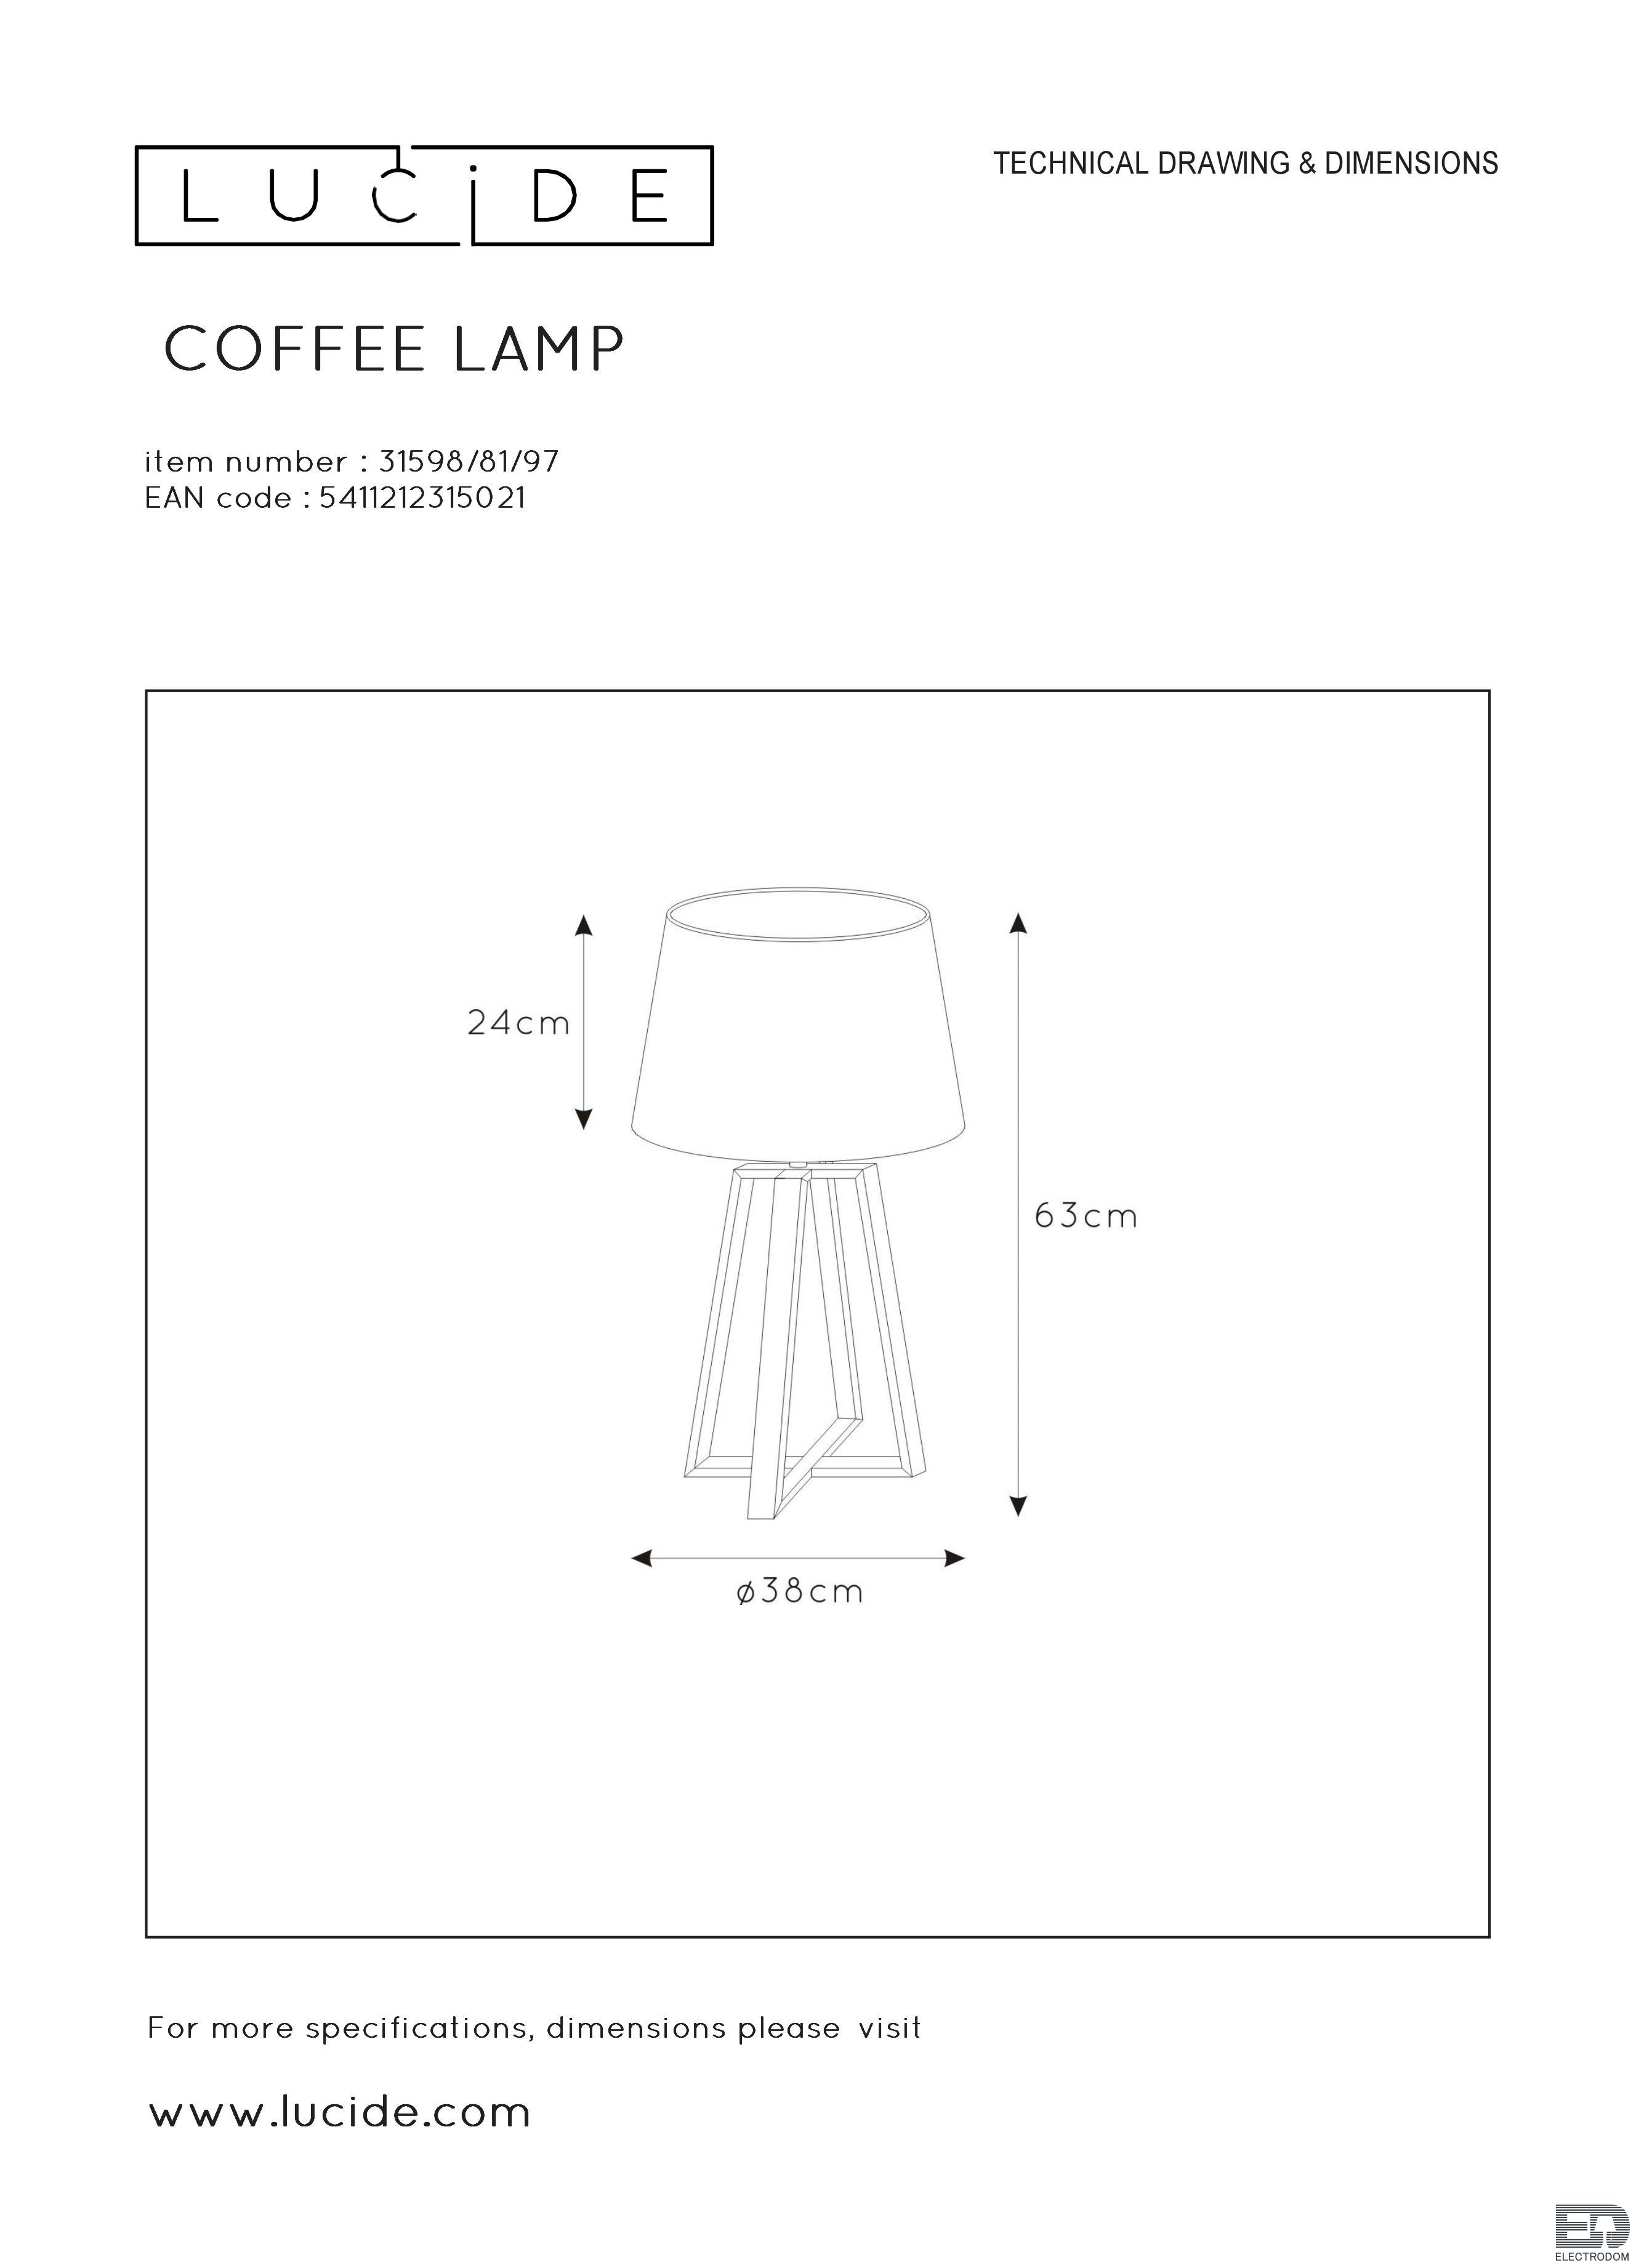 Настольная лампа Lucide Coffee 31598/81/97 - цена и фото 4